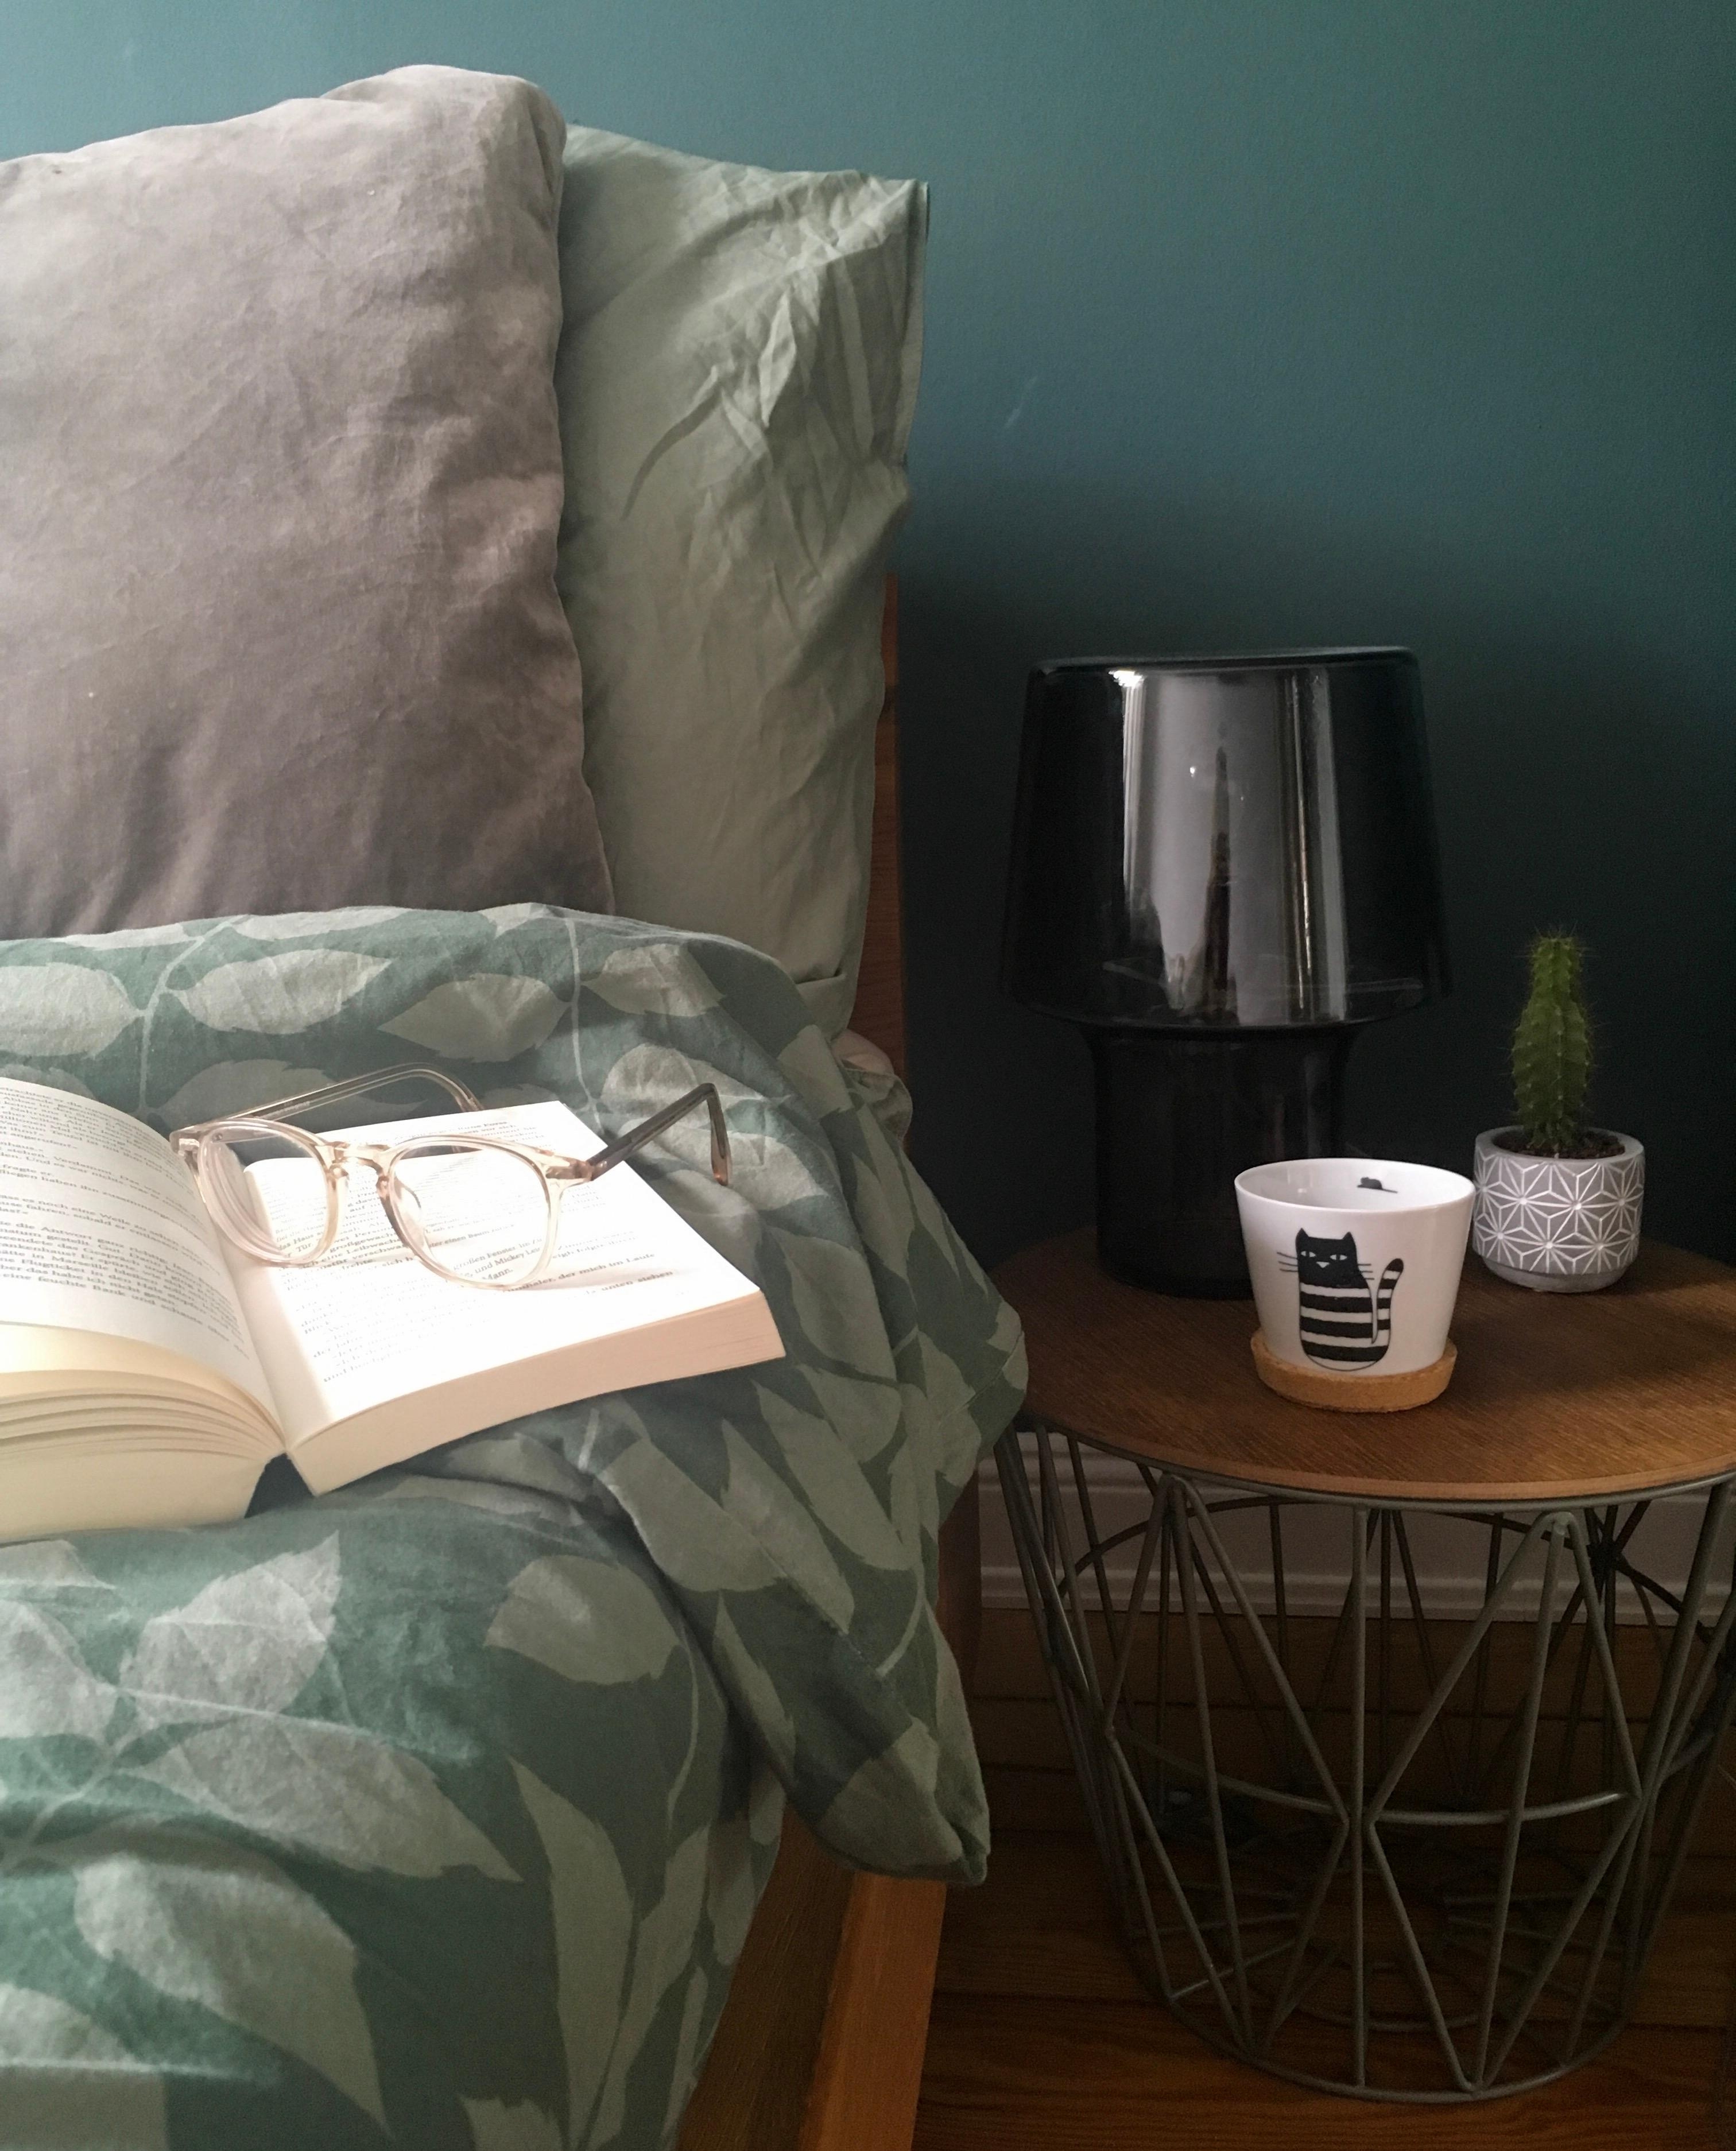 #zuhausesein bedeutet für mich: Sonntagmorgen im
Bett, mit einem spannenden Buch und Kaffee ohne Ende!